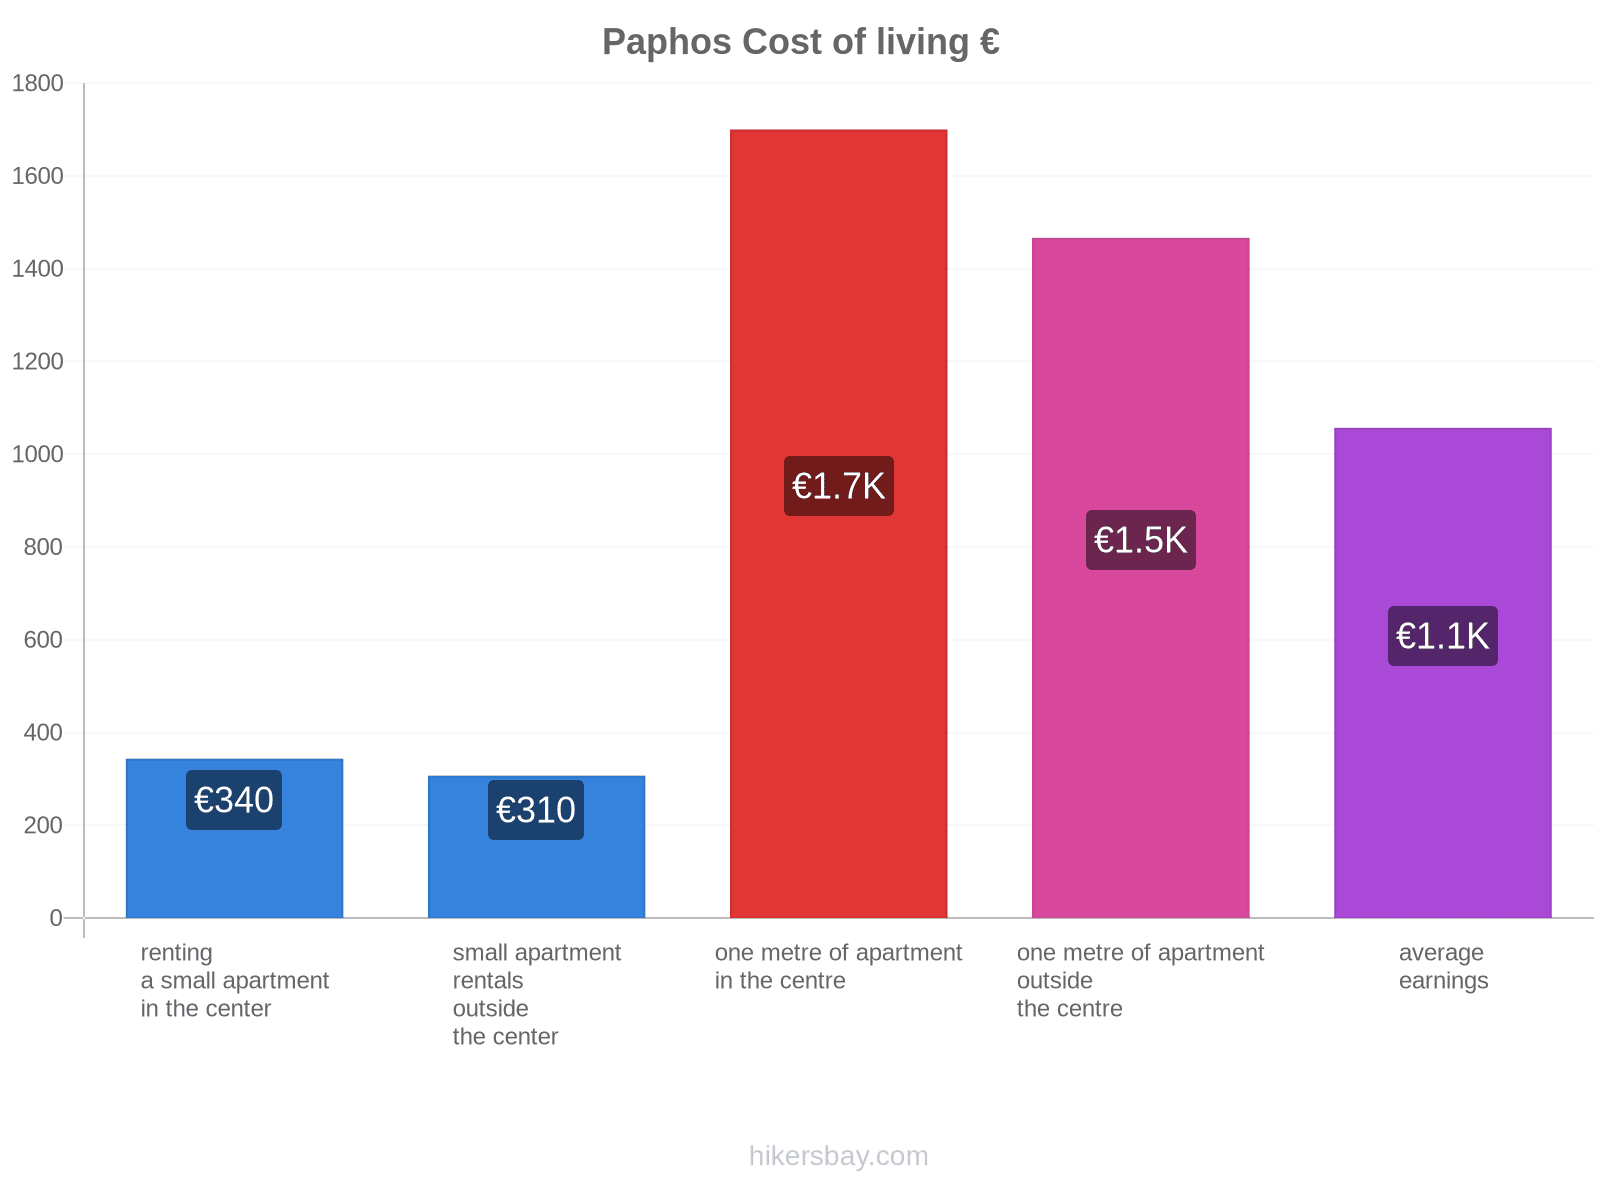 Paphos cost of living hikersbay.com